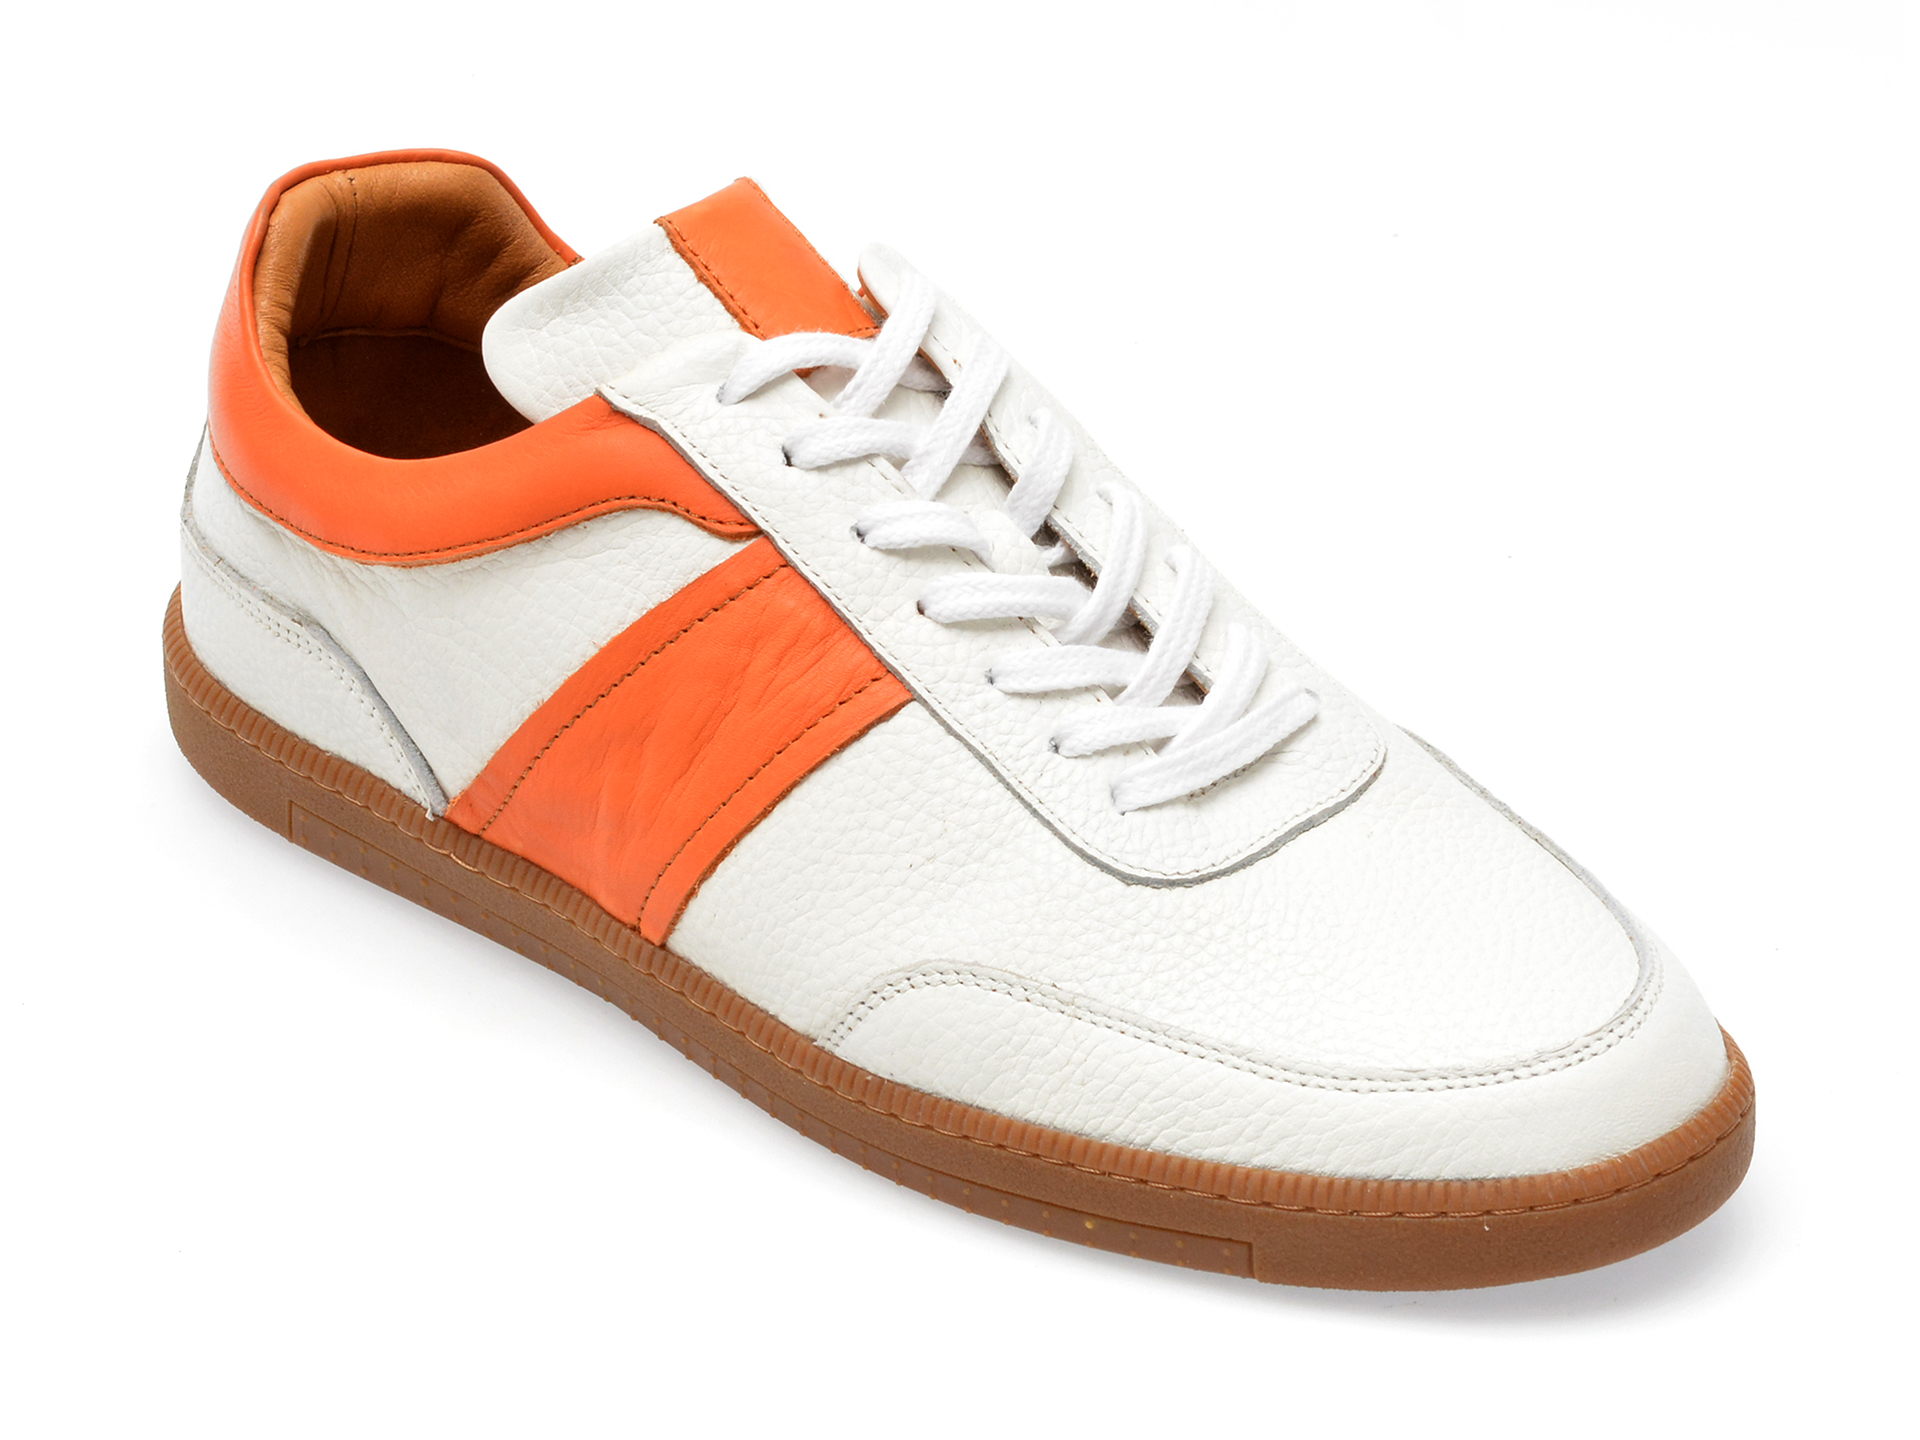 Pantofi AXXELLL albi, MS1004, din piele naturala /barbati/pantofi